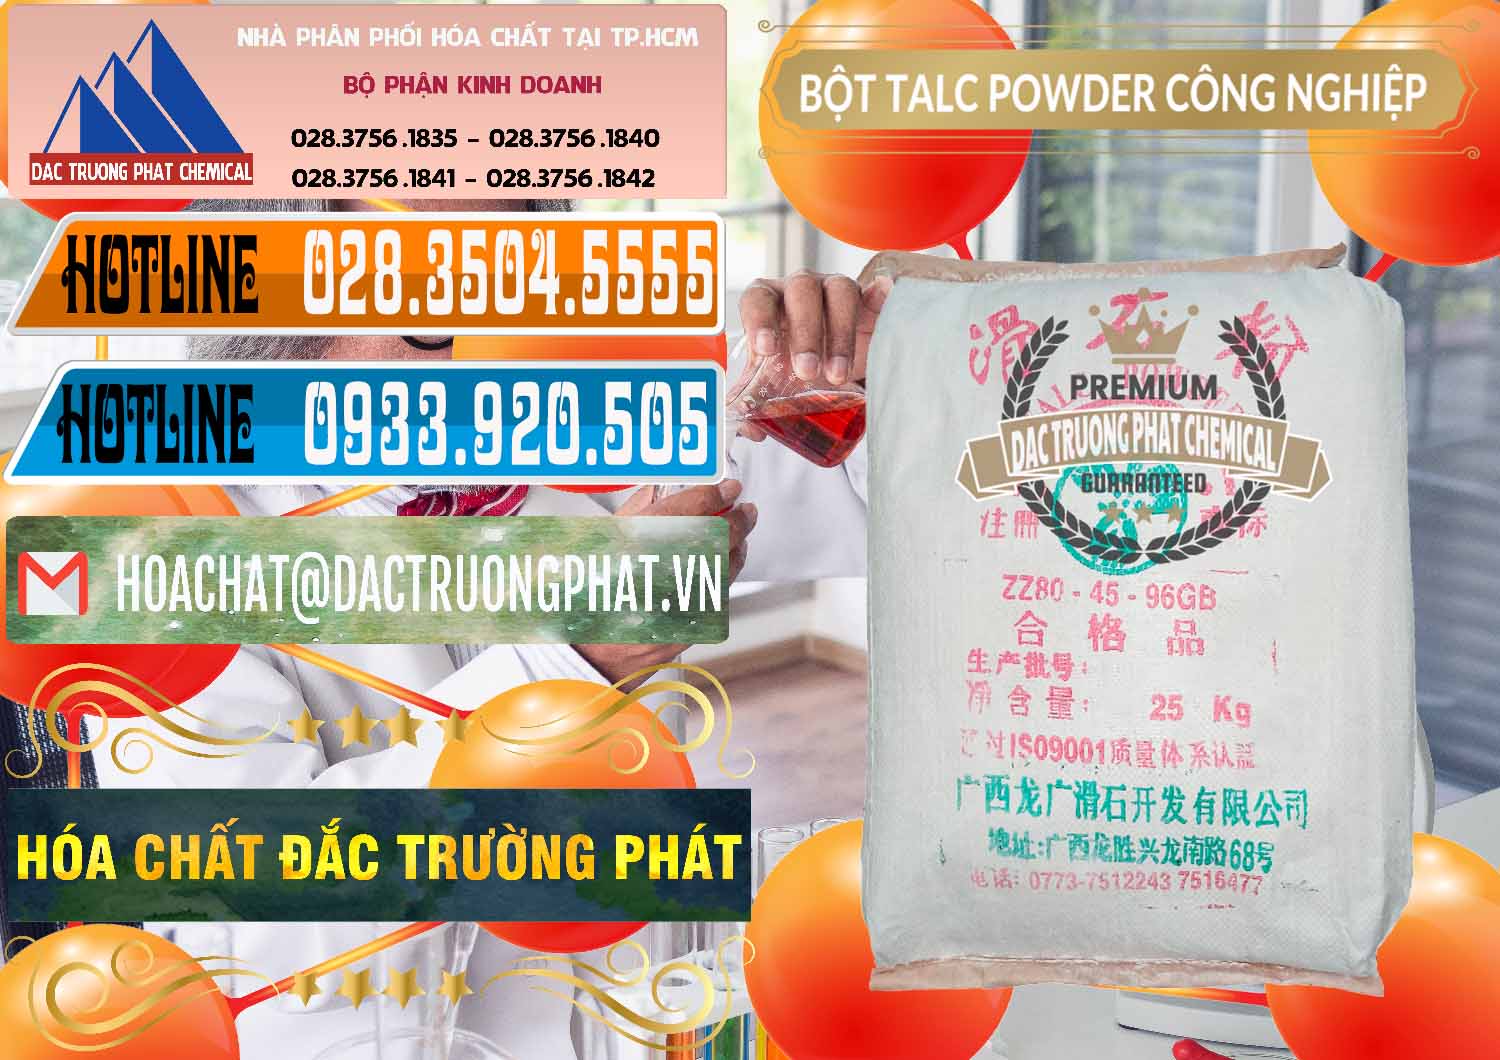 Công ty kinh doanh - bán Bột Talc Powder Công Nghiệp Trung Quốc China - 0037 - Nhà cung ứng - phân phối hóa chất tại TP.HCM - stmp.net